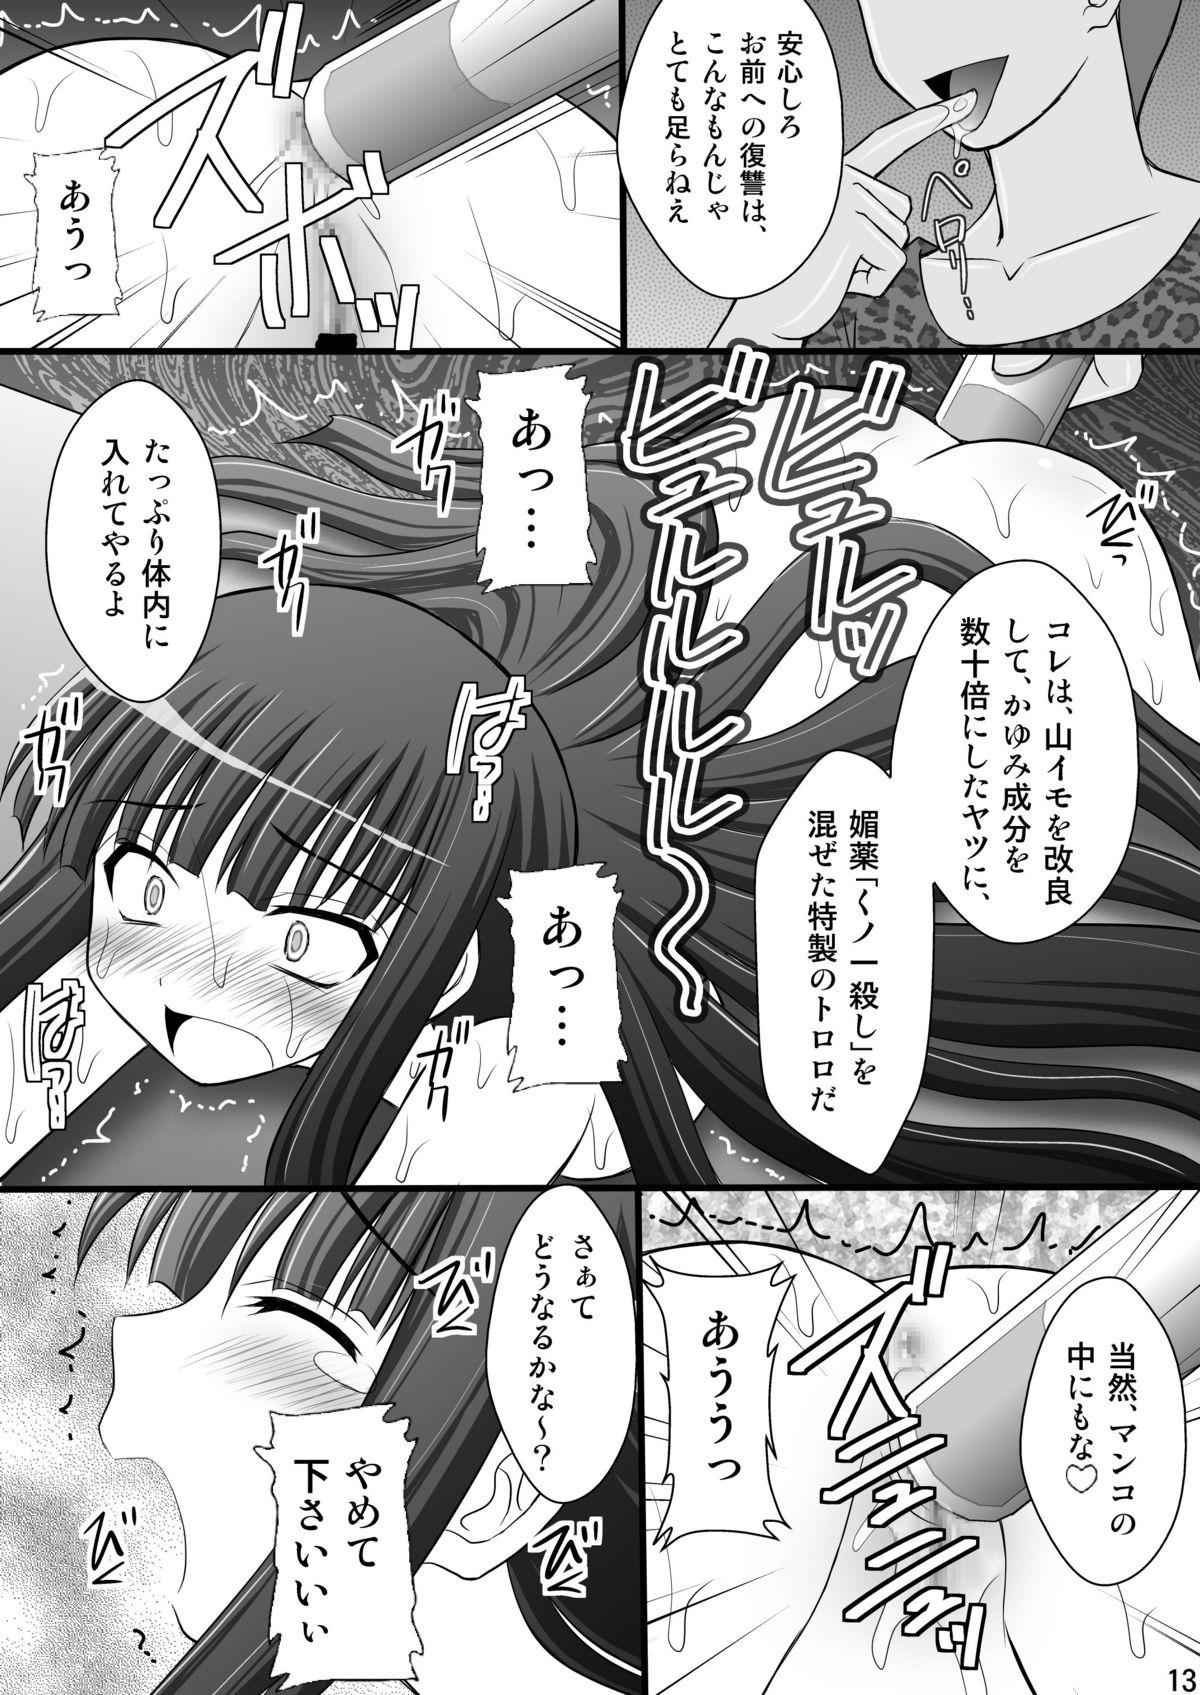 Ass Licking Otome Kunoichi Monzetsu Goumon Jigoku Emaki - Inran Mode Sono Ni "Ikaruga Yagyuu Hibari Hen" - Senran kagura Ddf Porn - Page 12